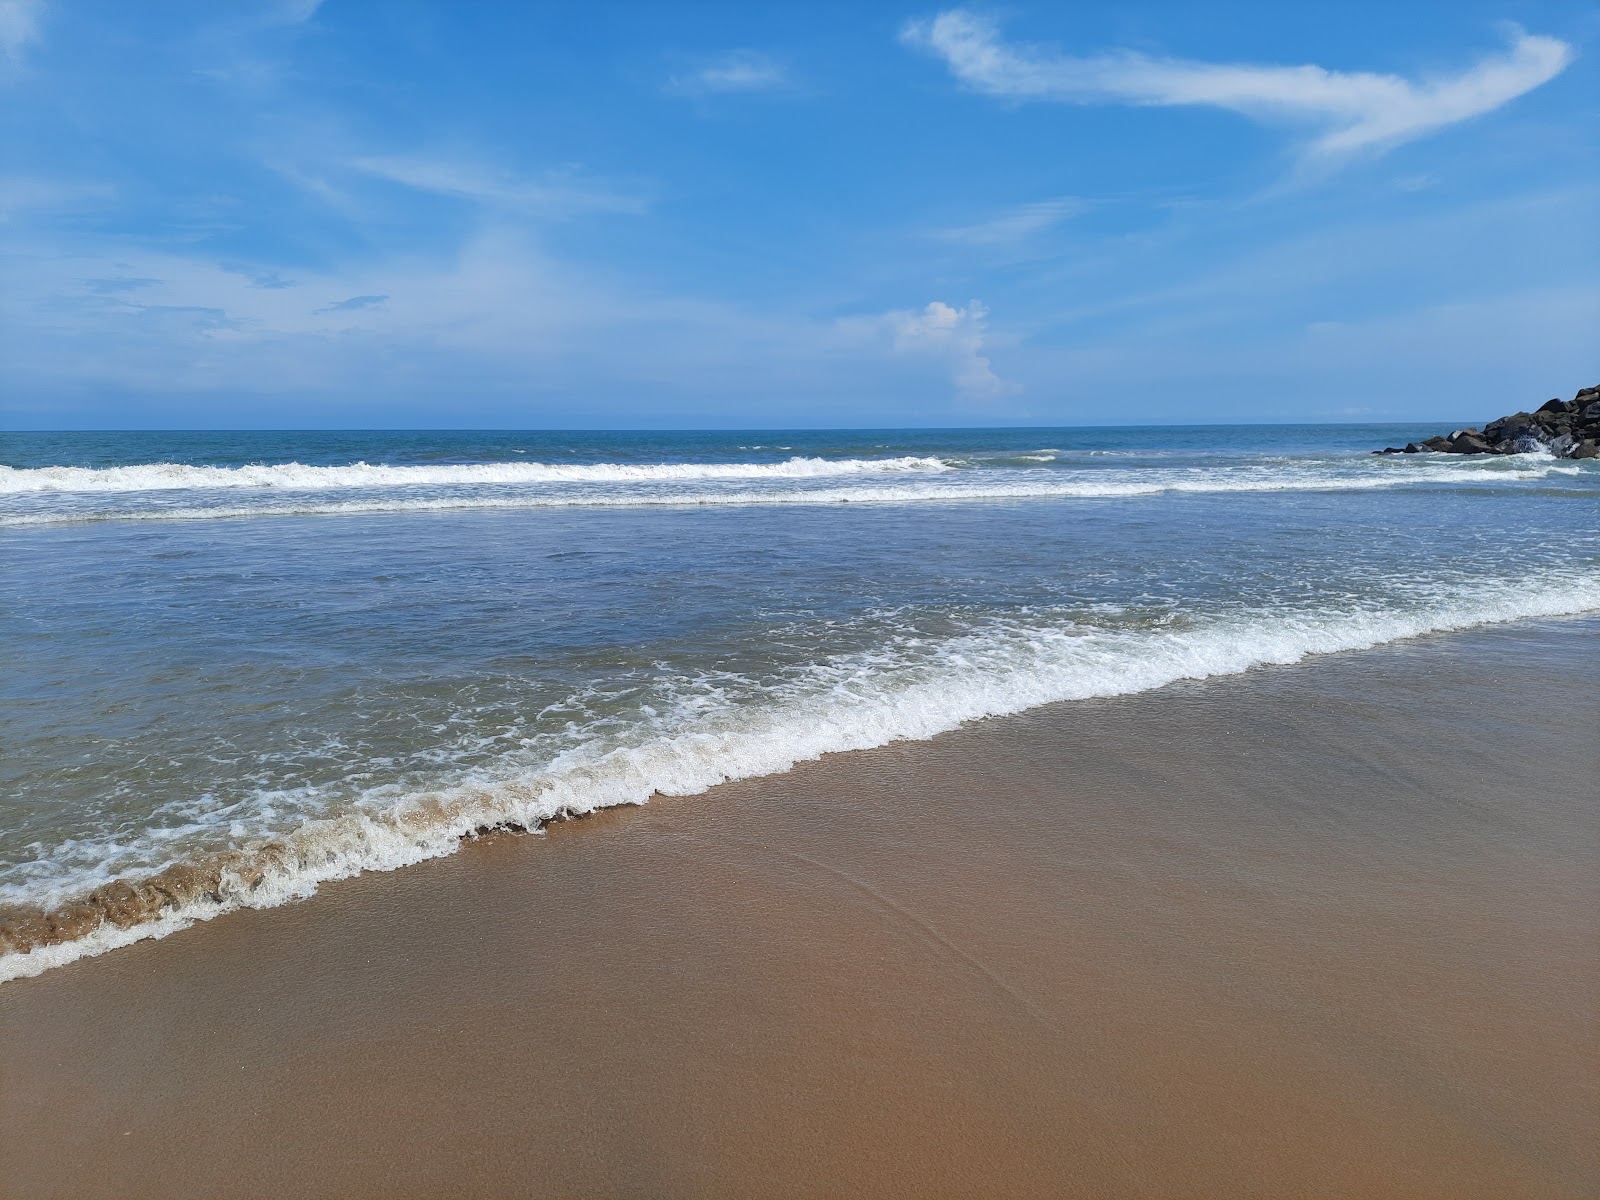 Foto de Poompuhar Beach com meios de comunicação nível de limpeza